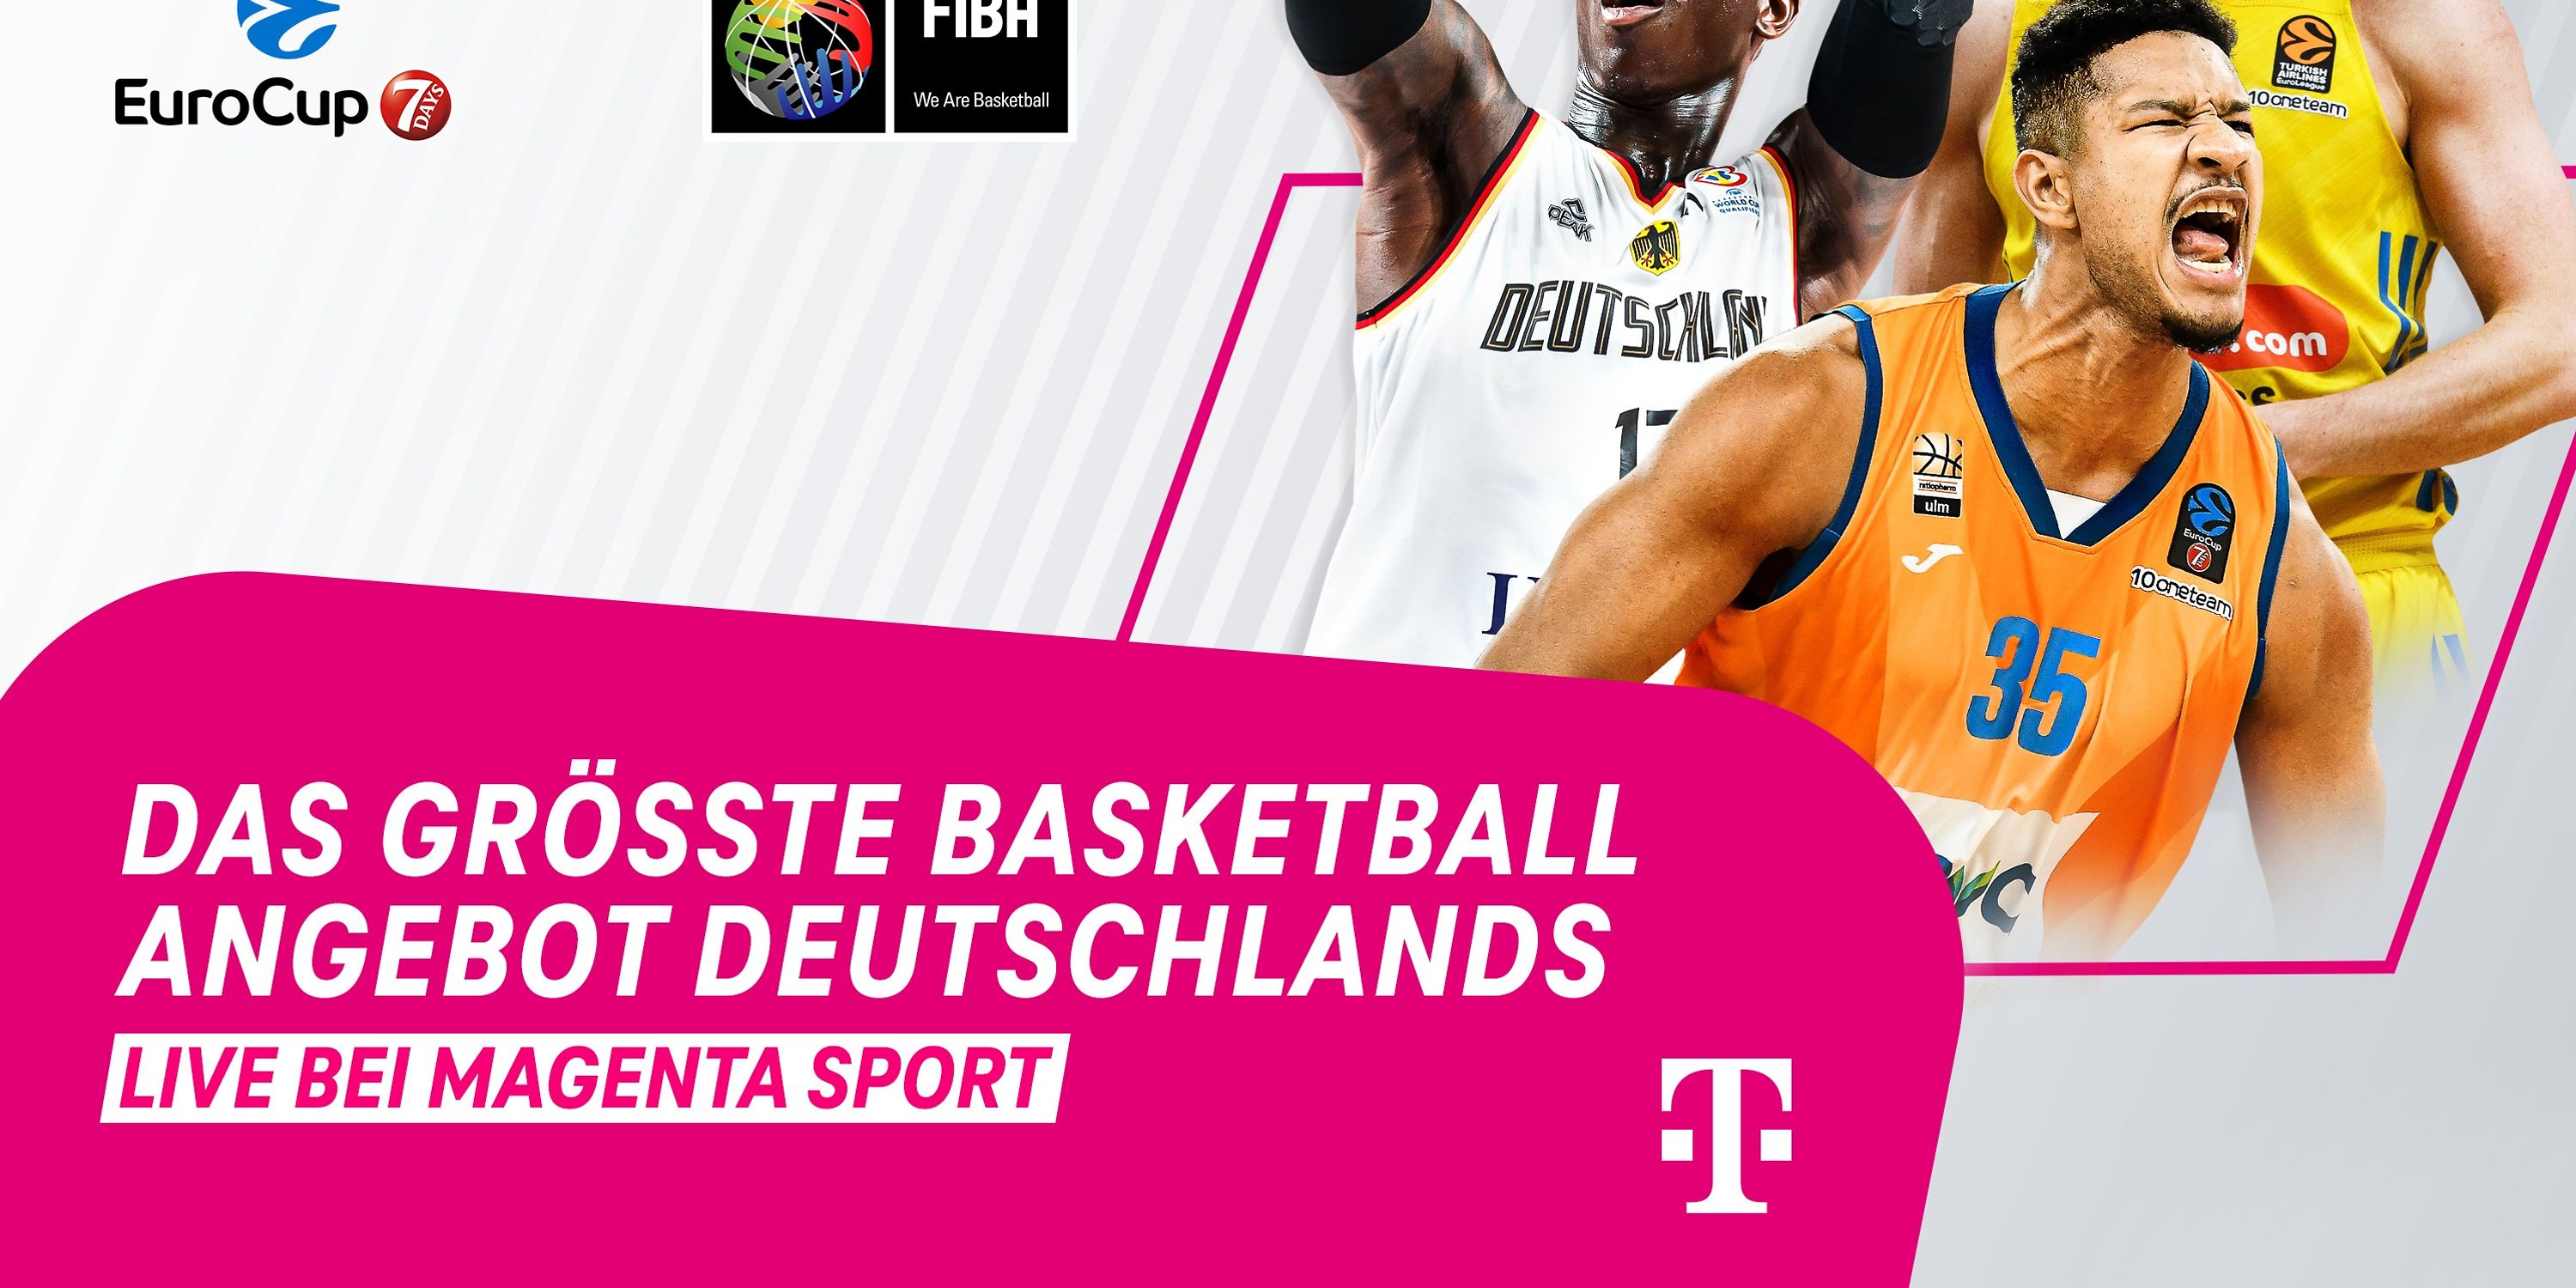 MagentaSport bietet weiterhin das größte Basketball-Angebot in Deutschland Deutsche Telekom